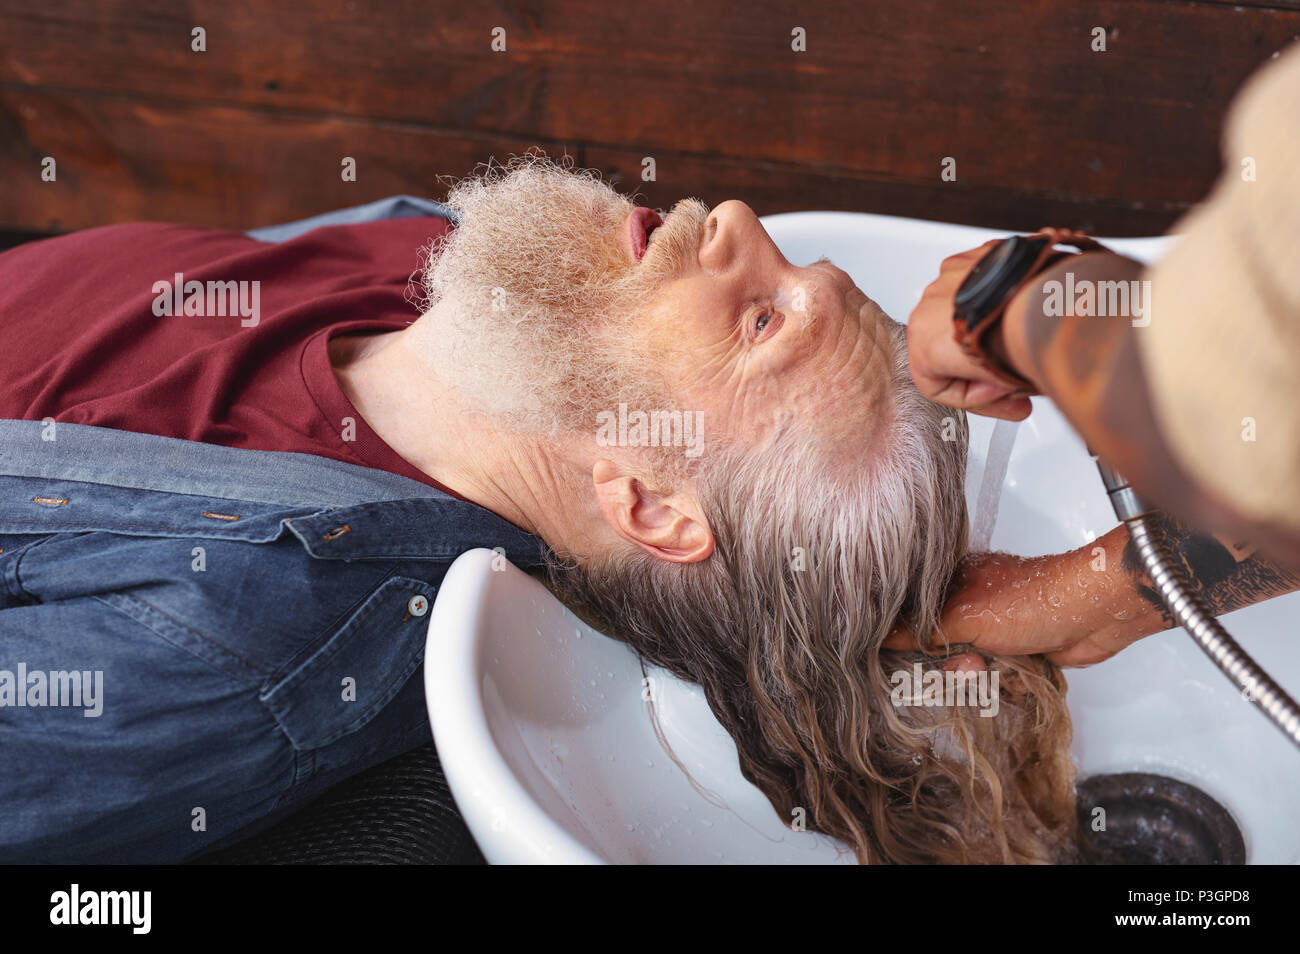 Ernsthafte grauhaarige männliche Person, Salon Stockfoto